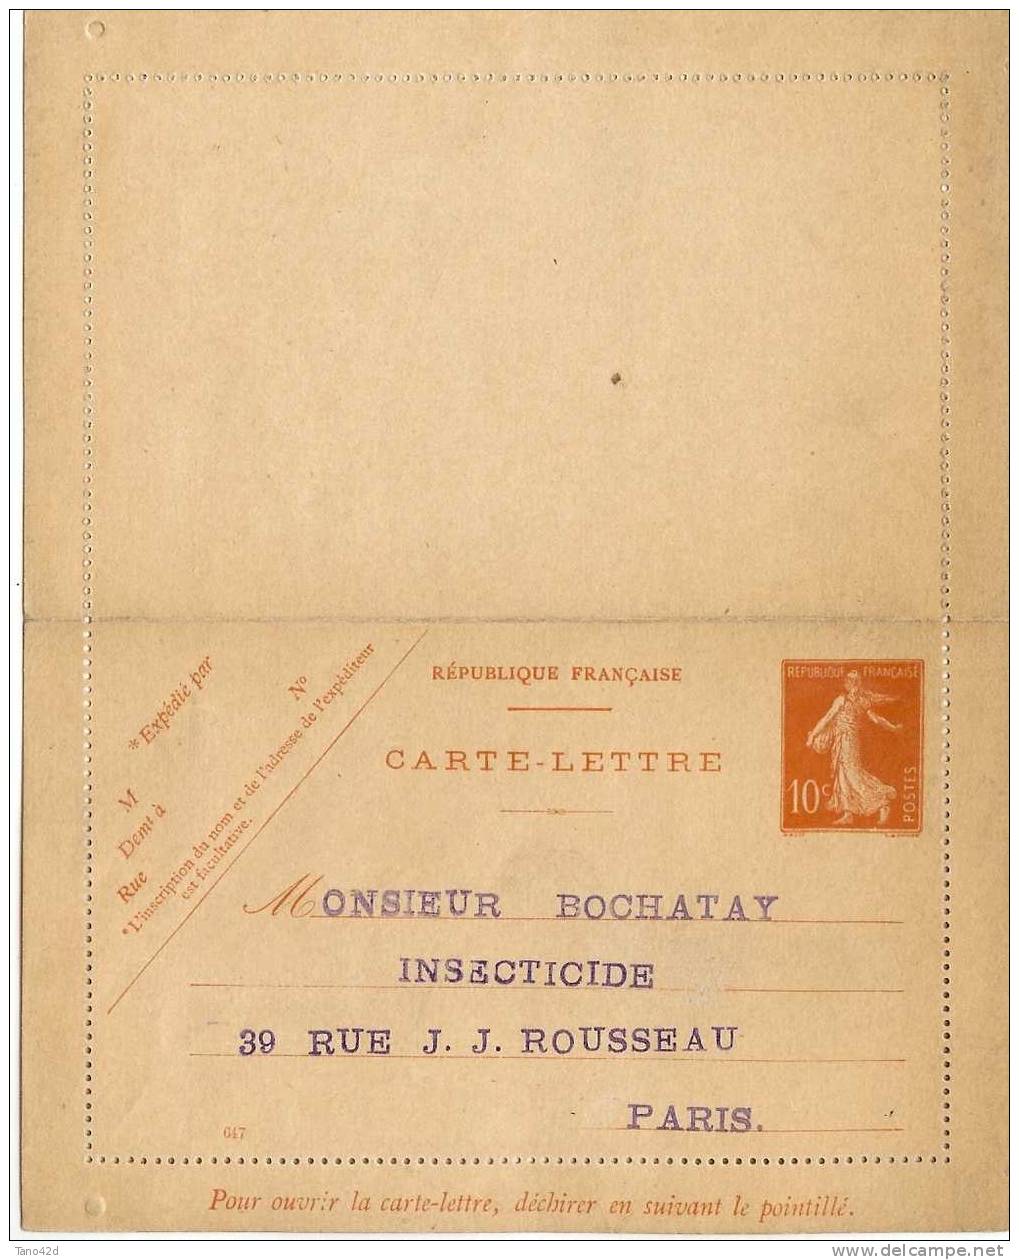 FRANCE - CARTE LETTRE TYPE SEMEUSE MAIGRE 10c REPIQUAGE M. BOCHATAY NEUVE - Cartes-lettres